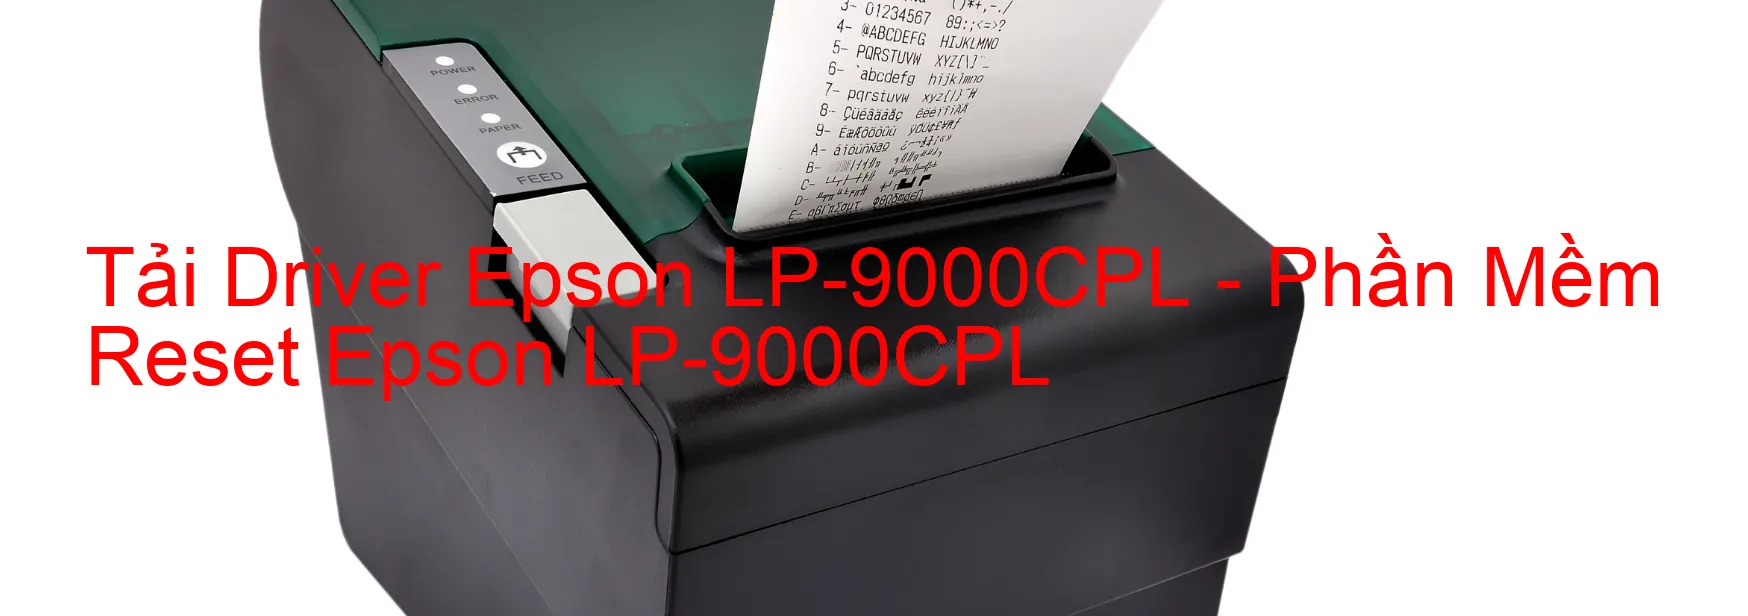 Driver Epson LP-9000CPL, Phần Mềm Reset Epson LP-9000CPL